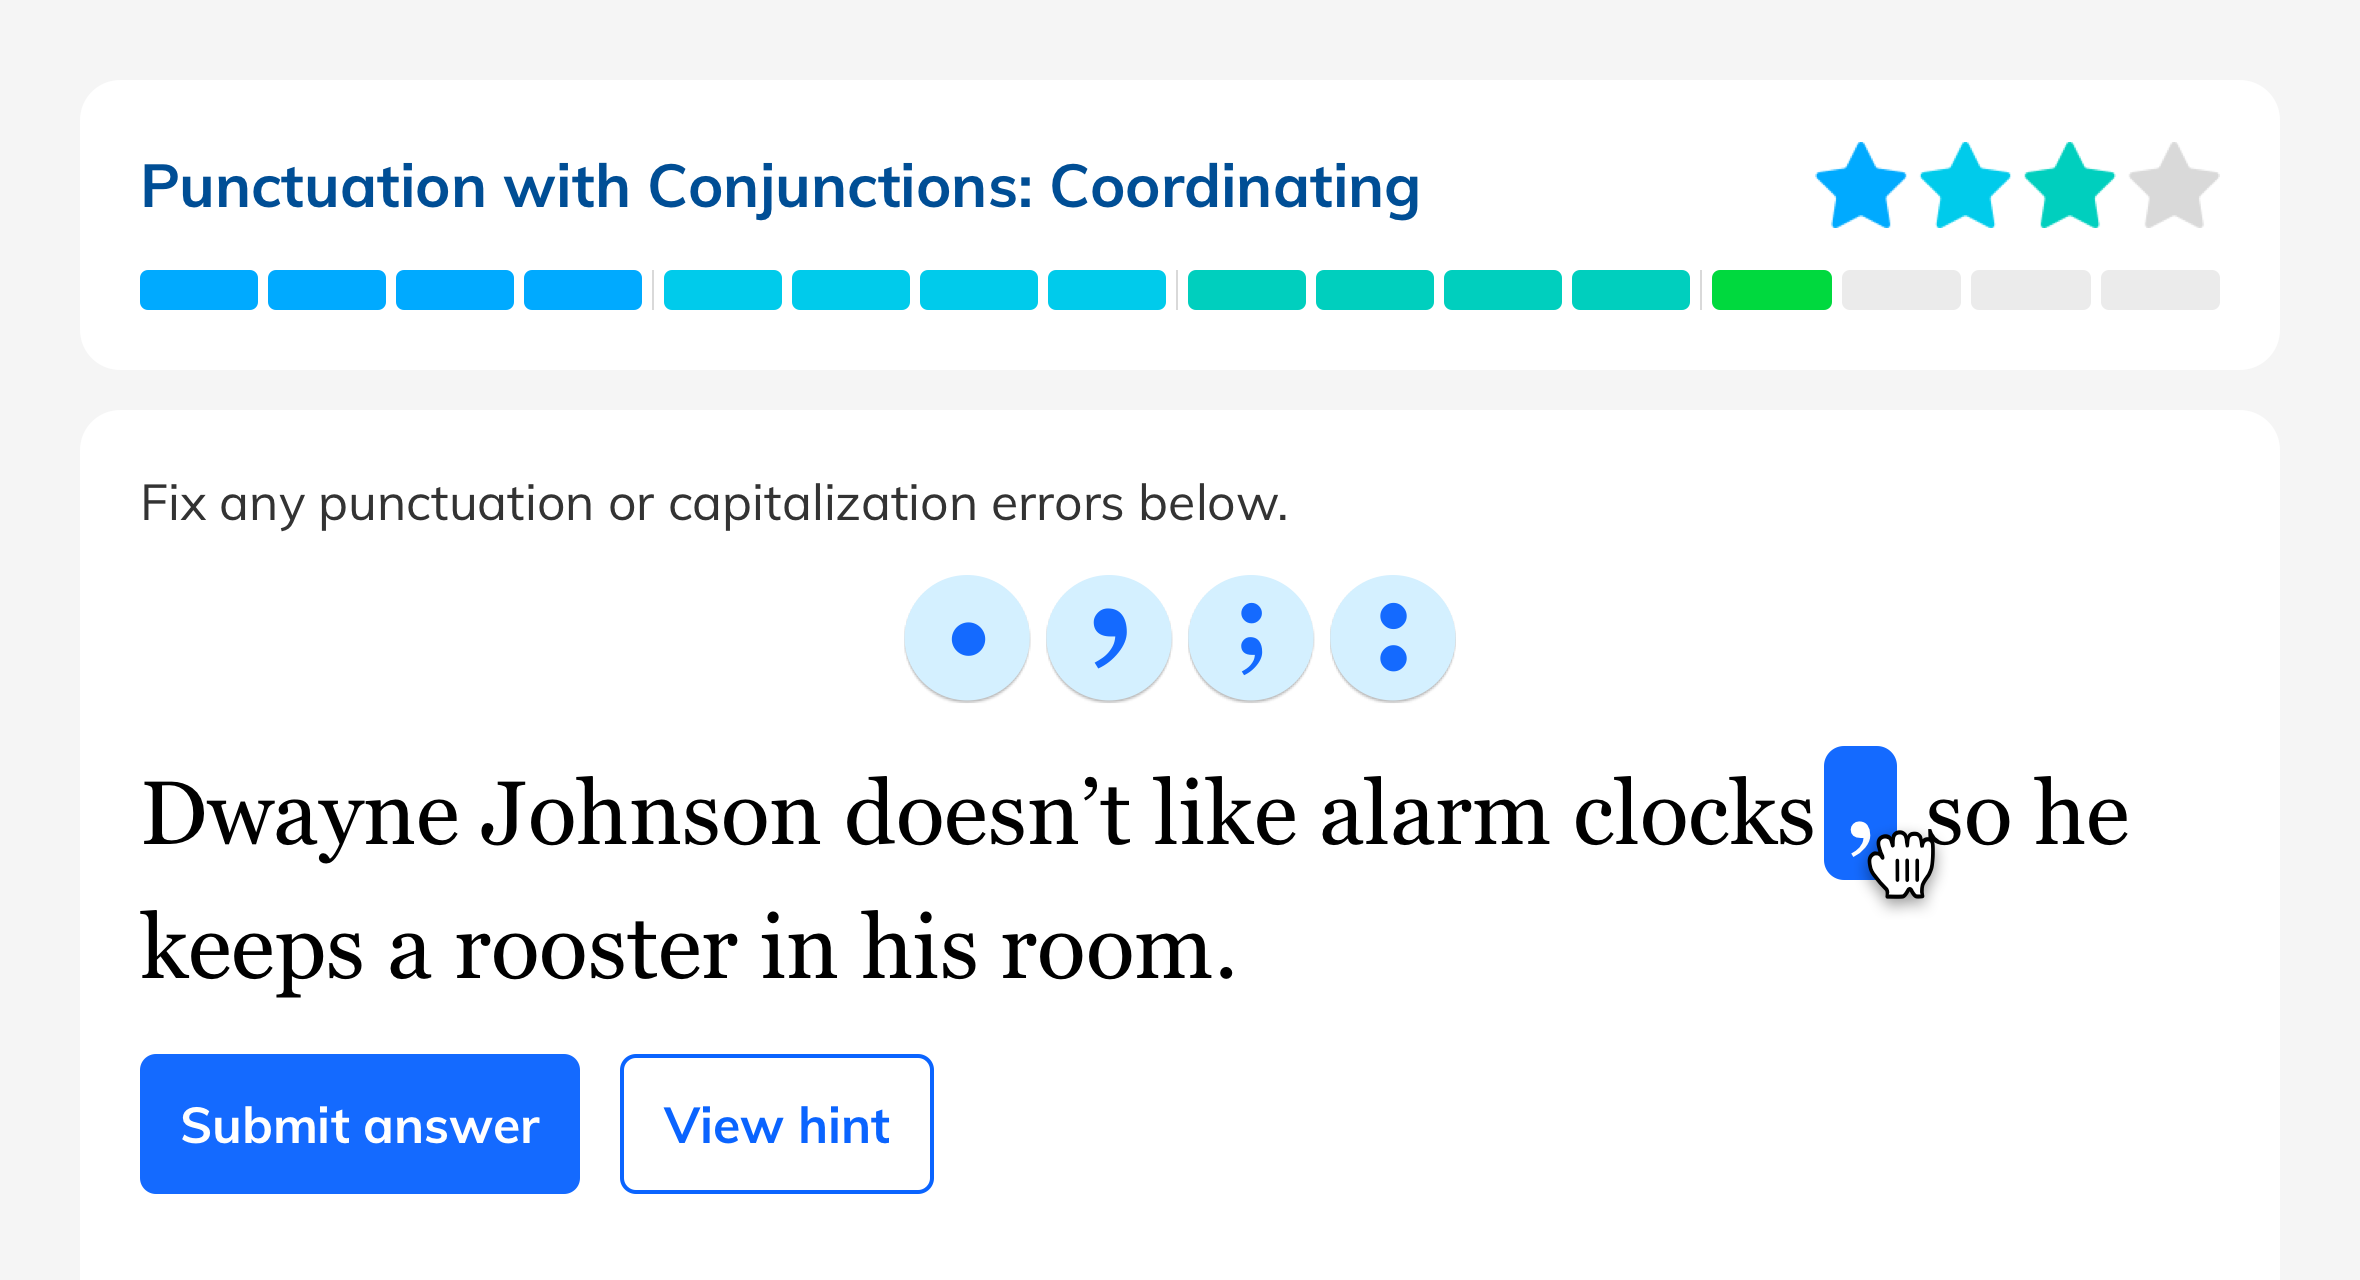 为了练习诸如“带连词的标点符号”之类的主题，学生们在有趣的句子中拖拽标点符号，比如“Dwayne Johnson不喜欢闹钟，所以他在房间里养了一只公鸡。”